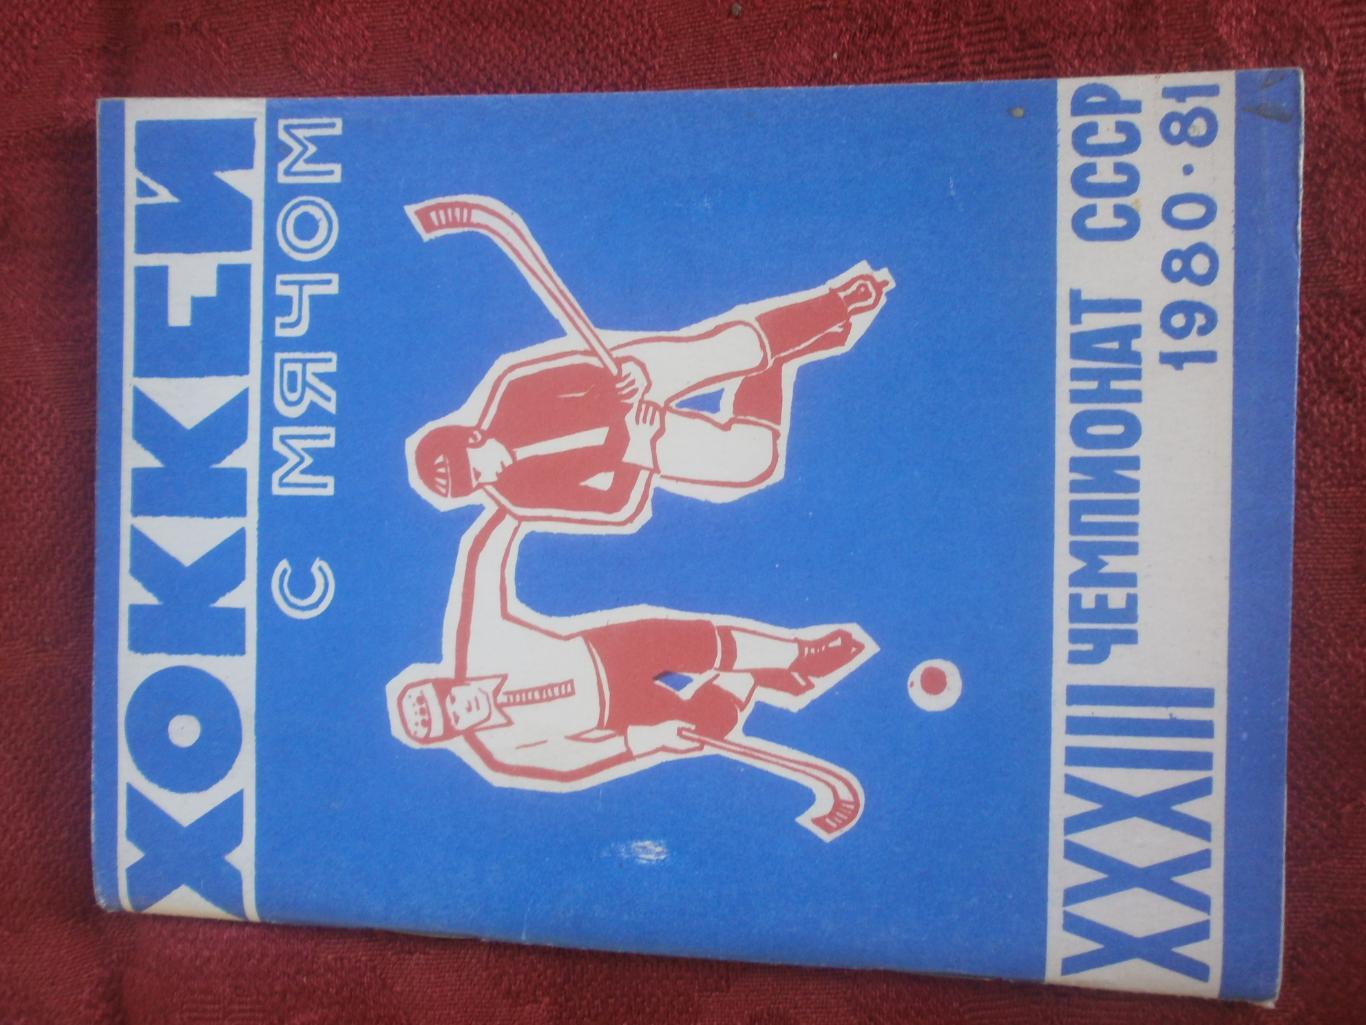 Календарь - справочник хоккей с мячом Архангельск 1980-81